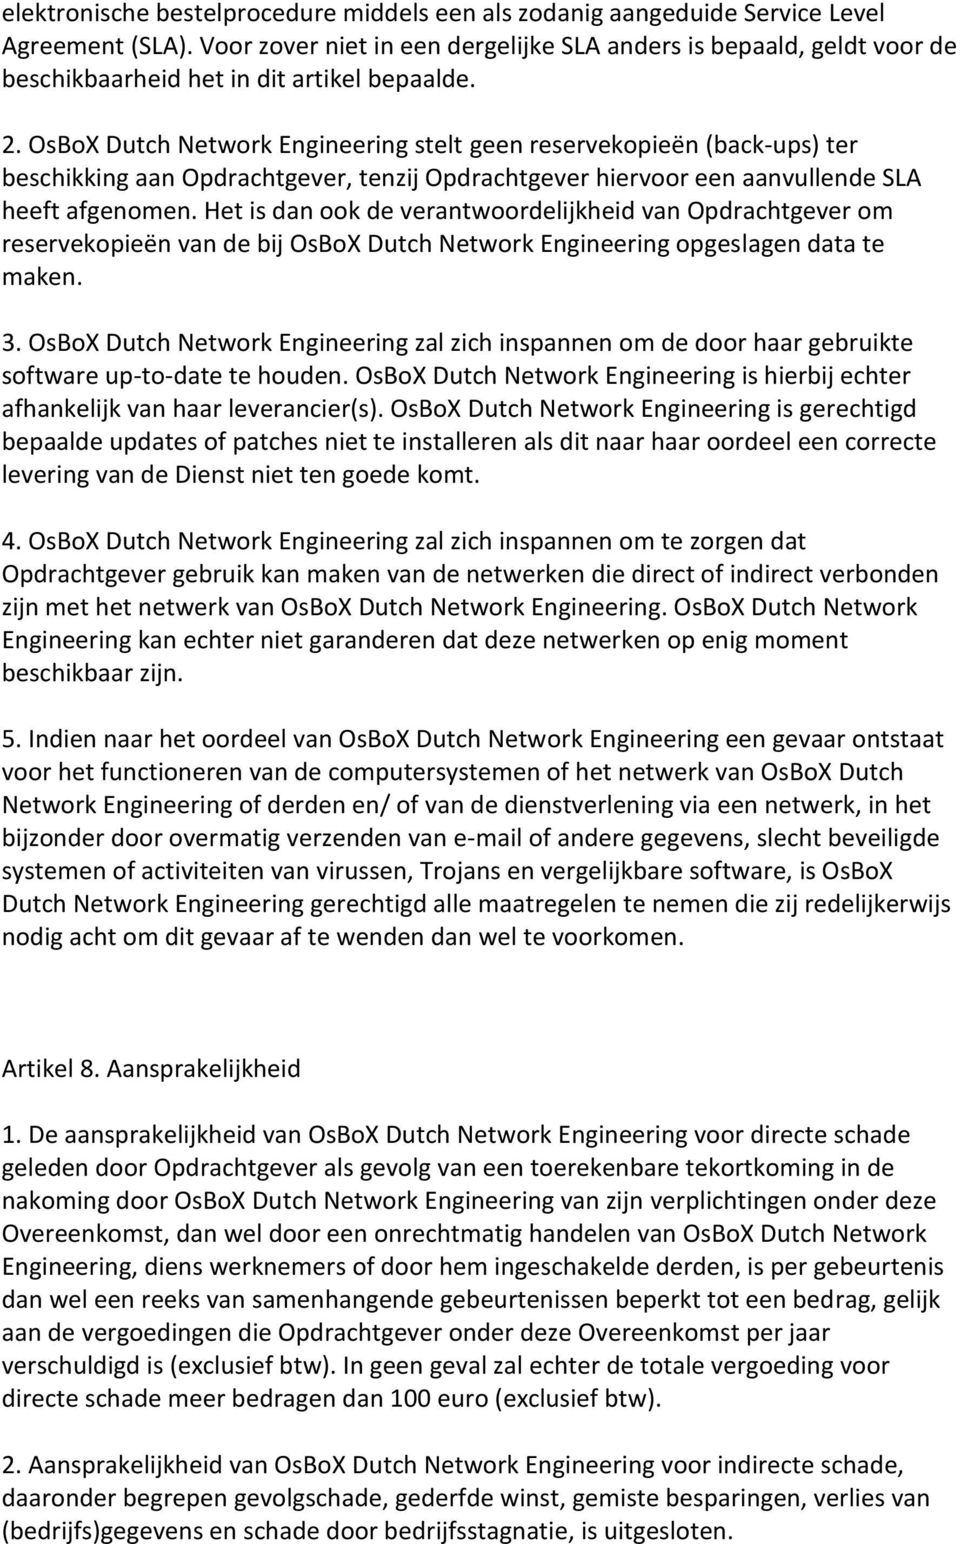 OsBoX Dutch Network Engineering stelt geen reservekopieën (back-ups) ter beschikking aan Opdrachtgever, tenzij Opdrachtgever hiervoor een aanvullende SLA heeft afgenomen.